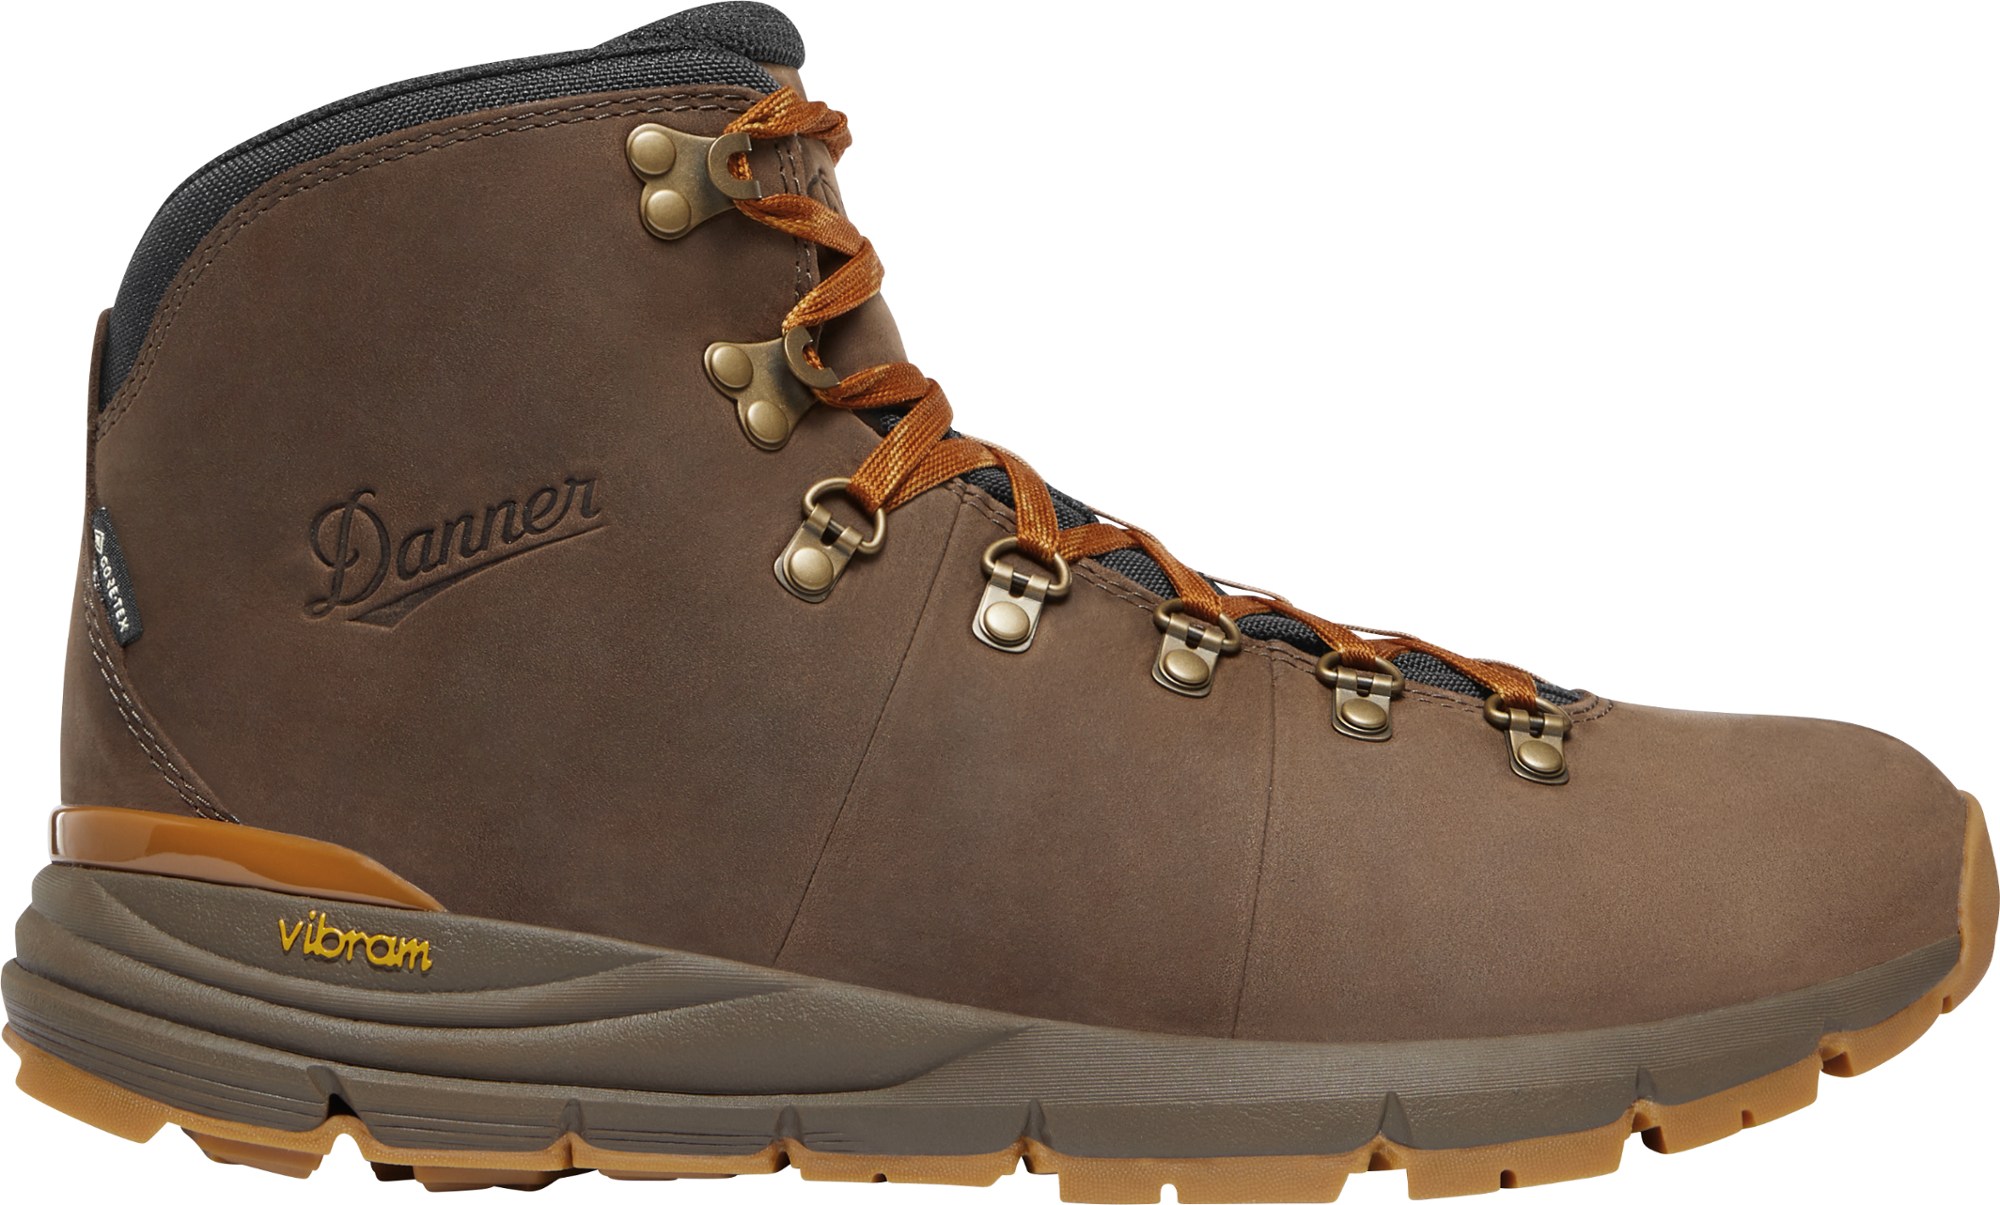 Походные ботинки Mountain 600 Leaf GORE-TEX — мужские Danner, коричневый